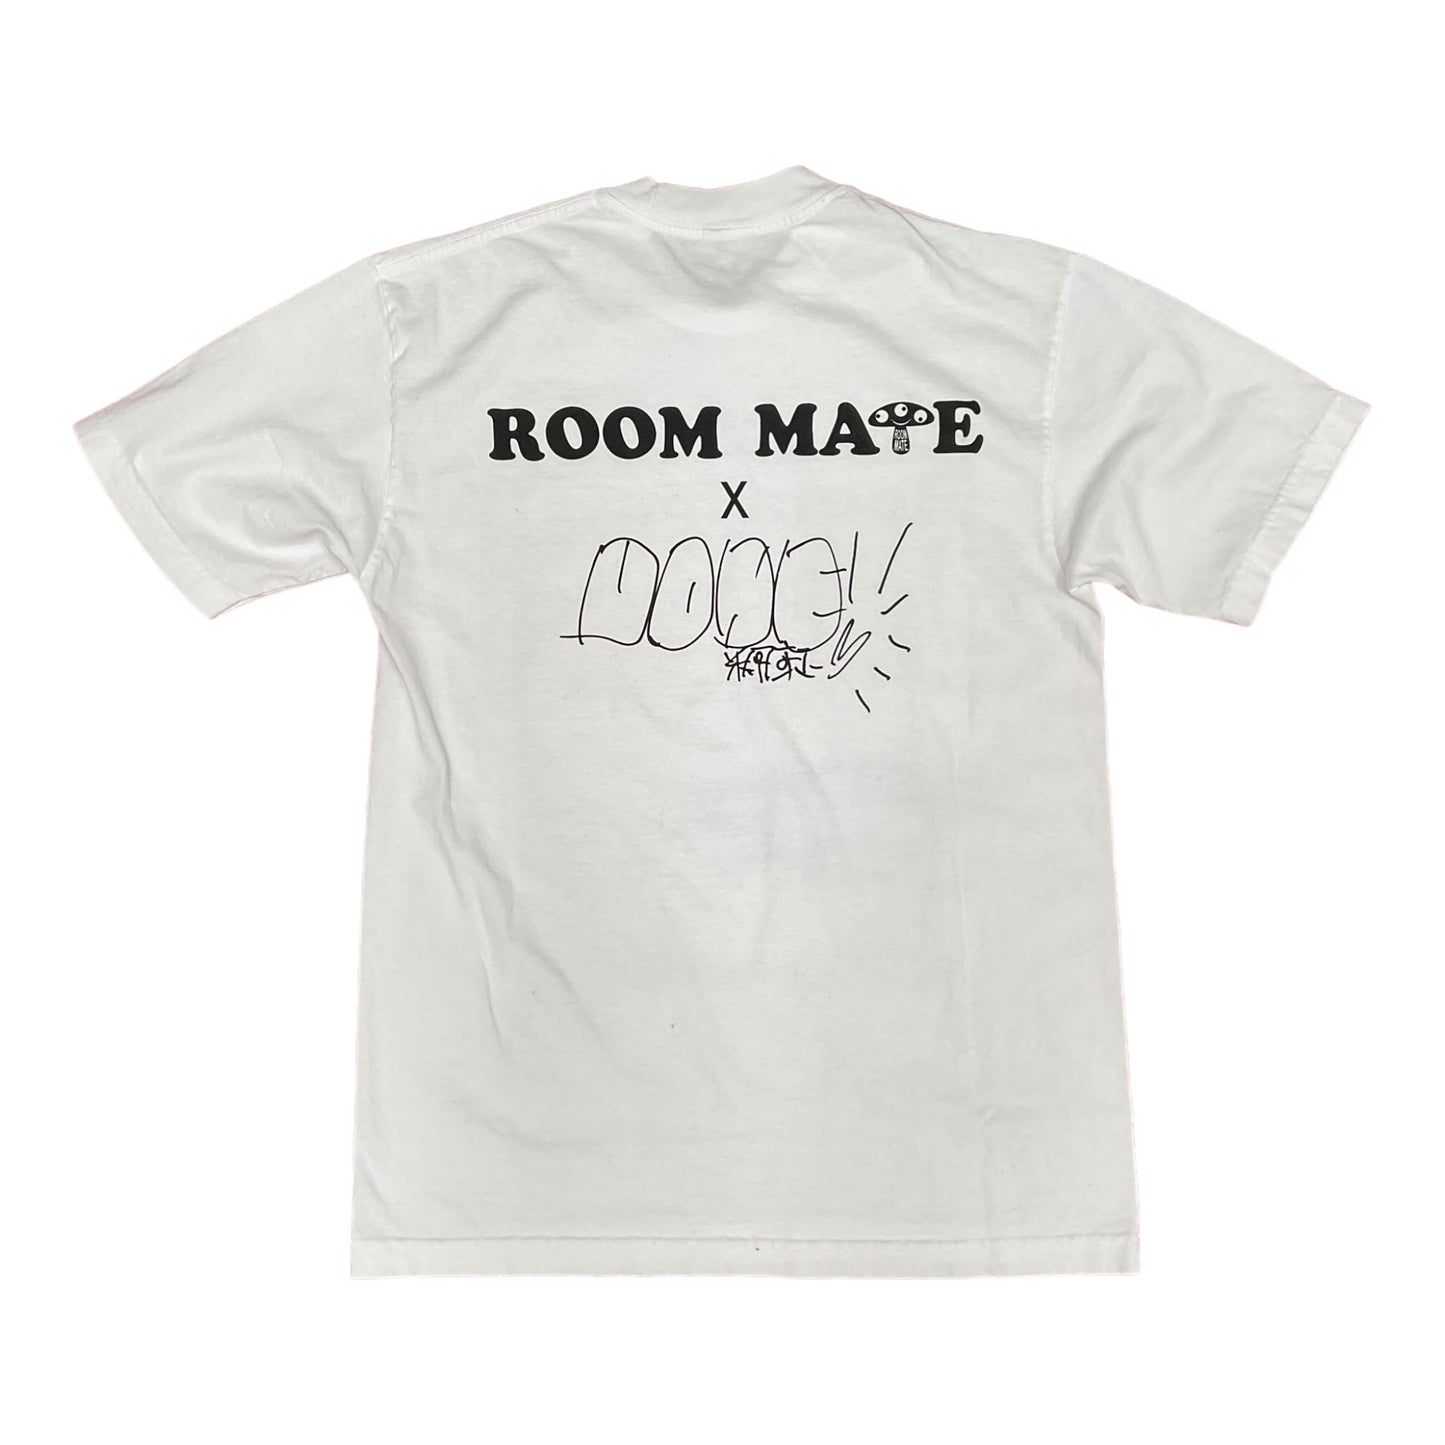 Yasumasa Yonehara x Roommate collaboration T-shirt